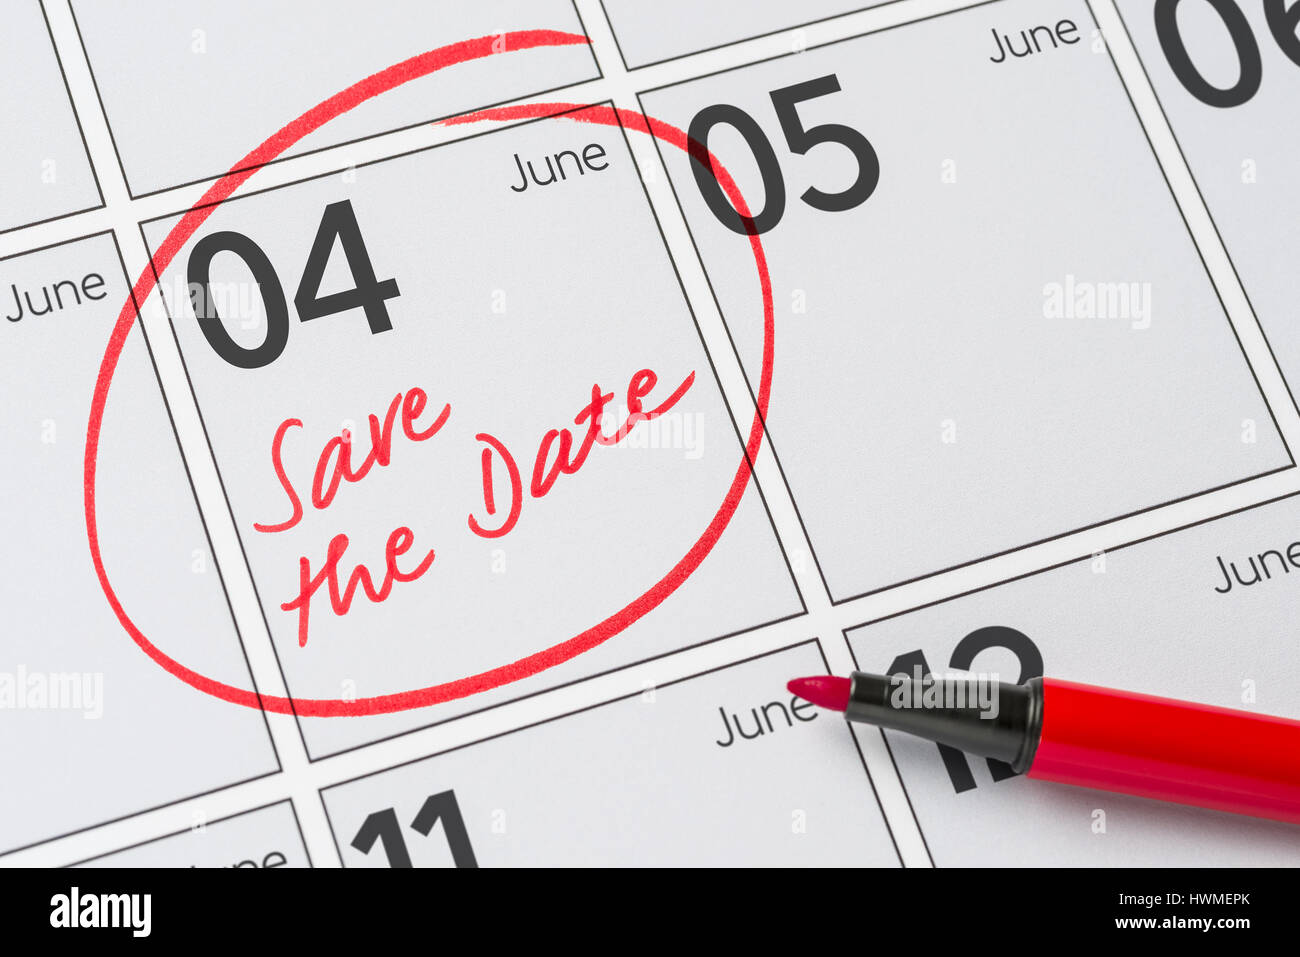 Enregistrer la date inscrite sur un calendrier - juin 04 Banque D'Images